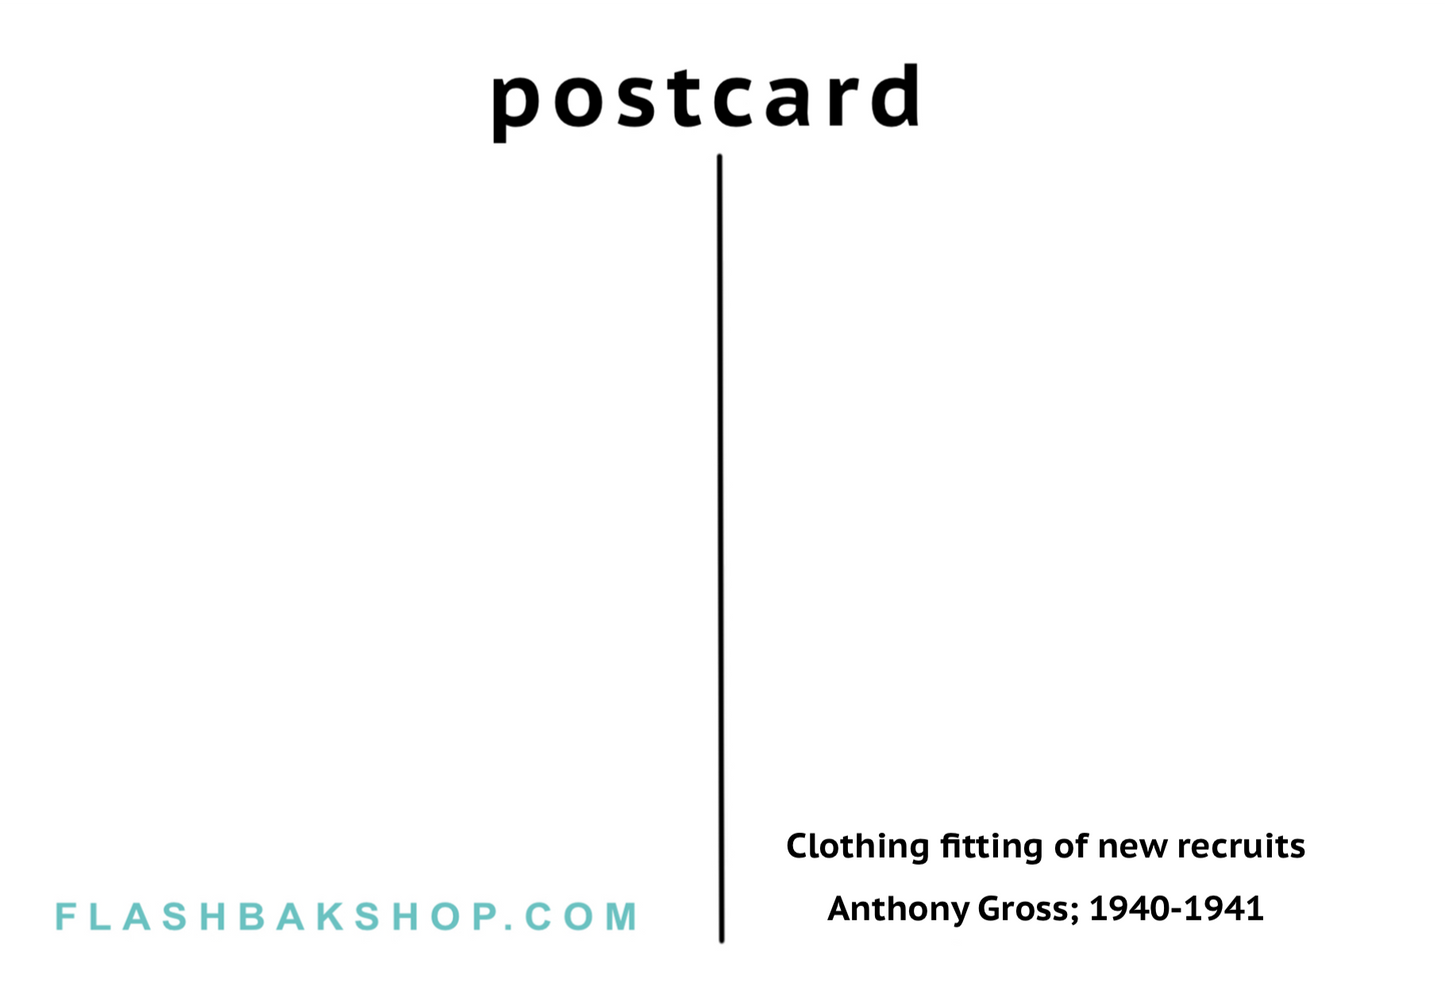 Essayage vestimentaire des nouvelles recrues par Anthony Gross, 1940-1941 - Carte postale